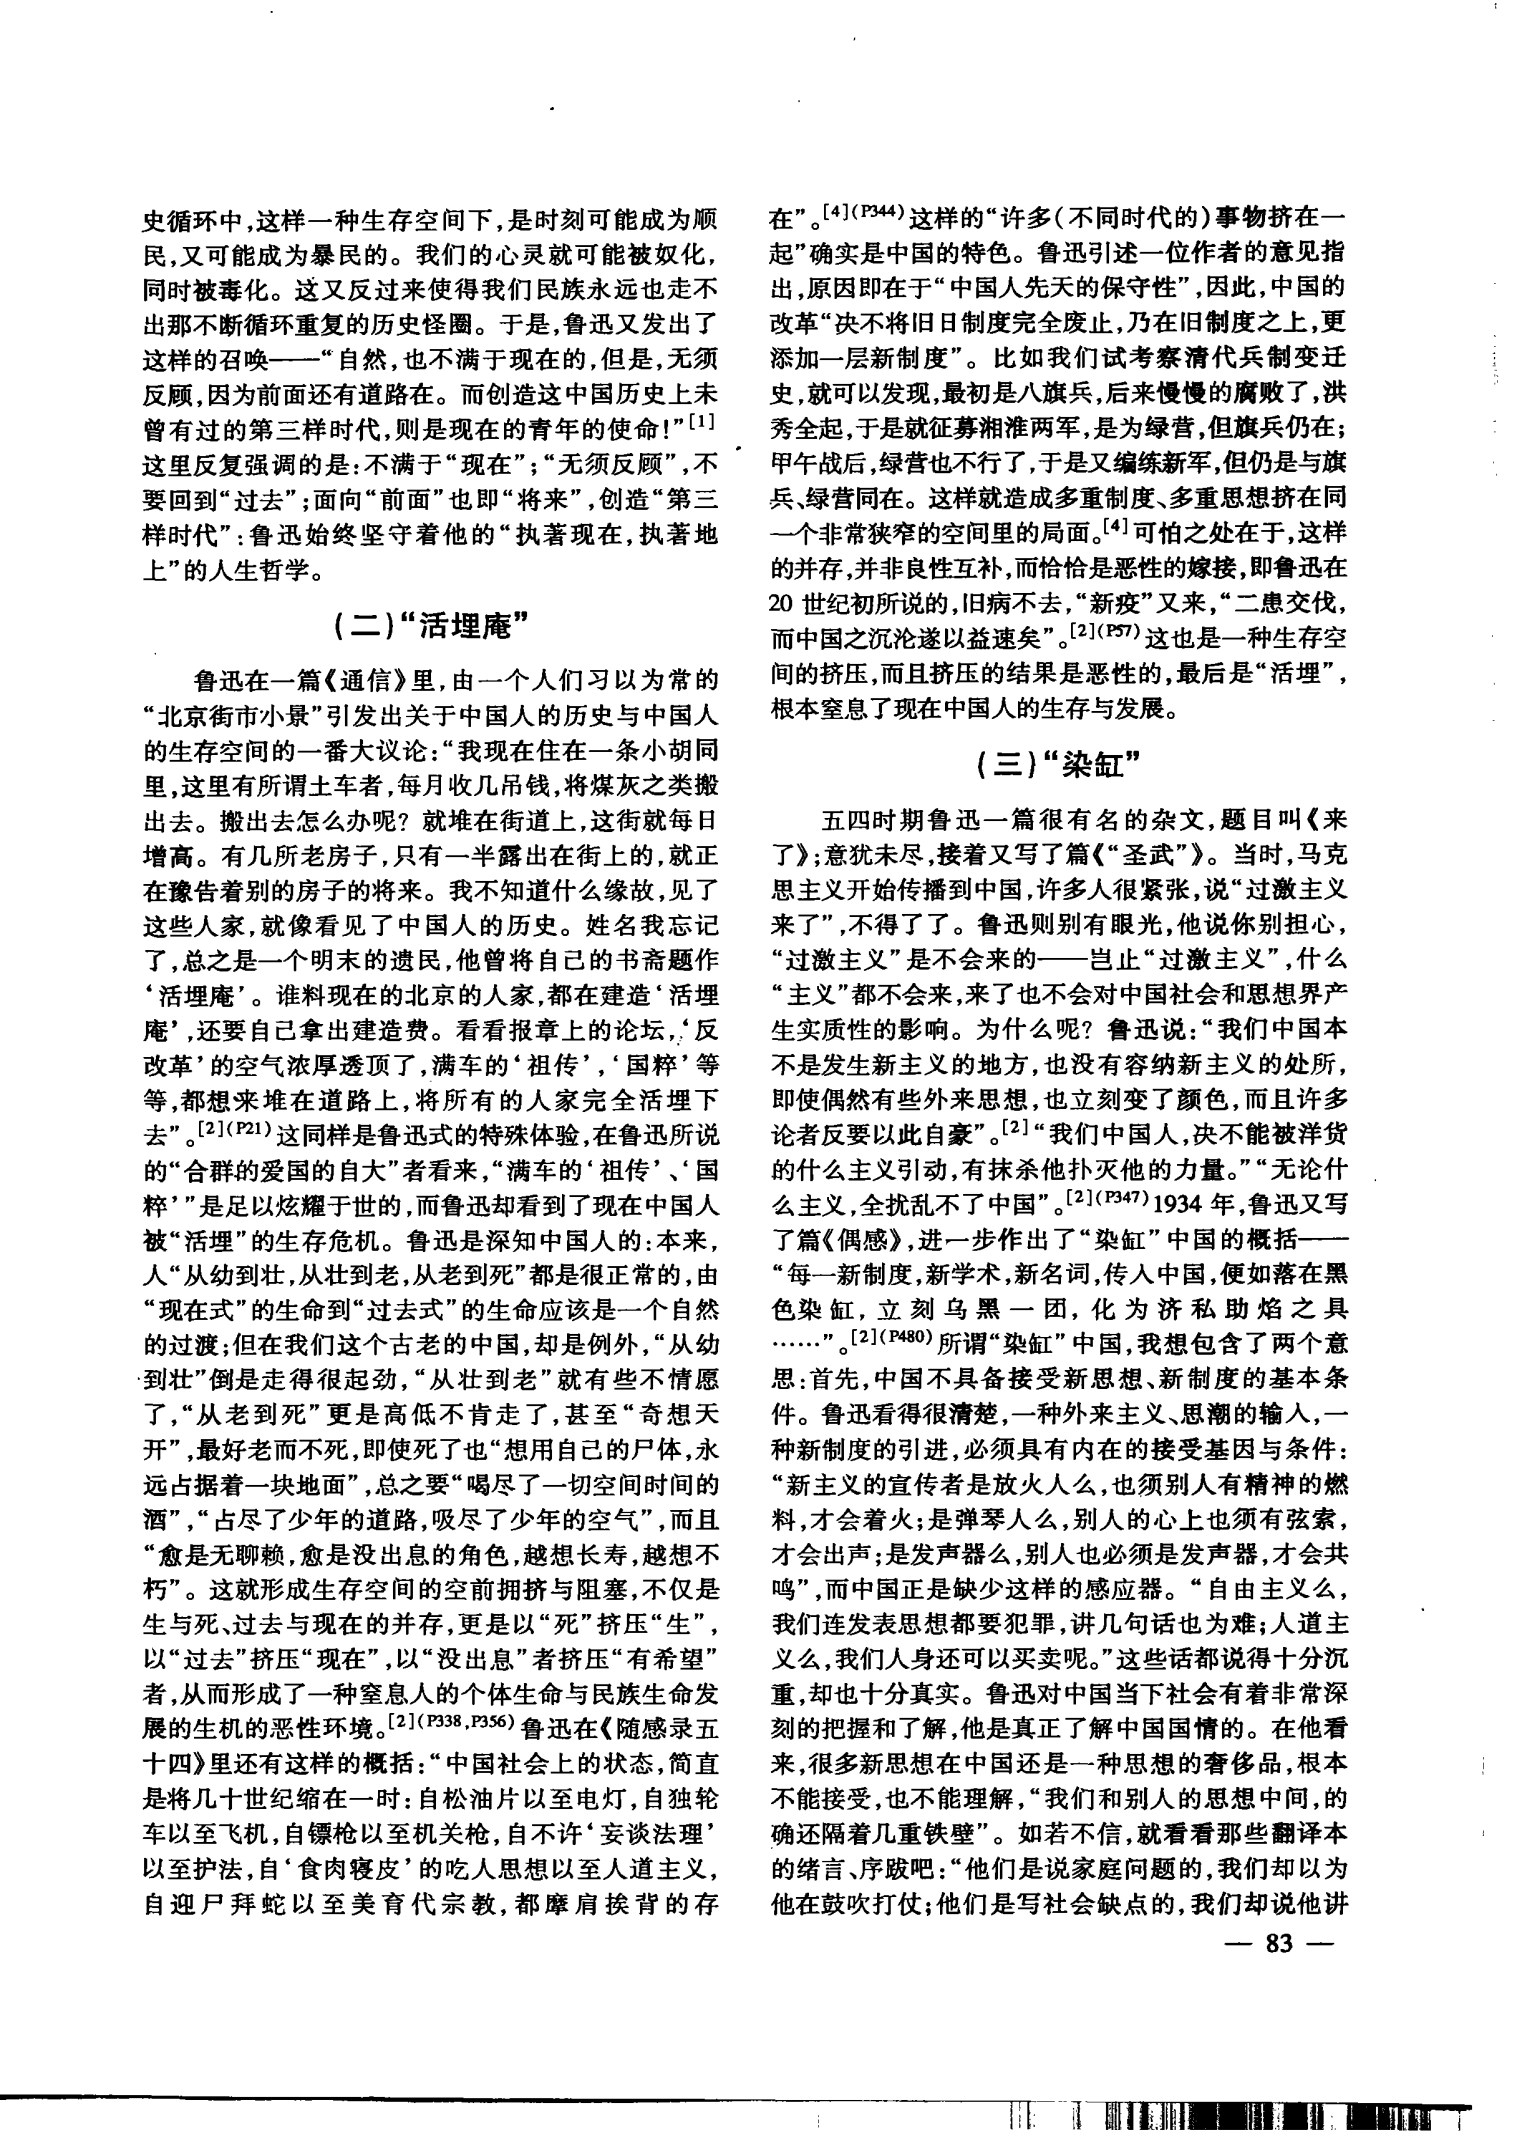 关于“现在中国人的生存和发展”的思考——1918—1925年间的鲁迅杂文(下)